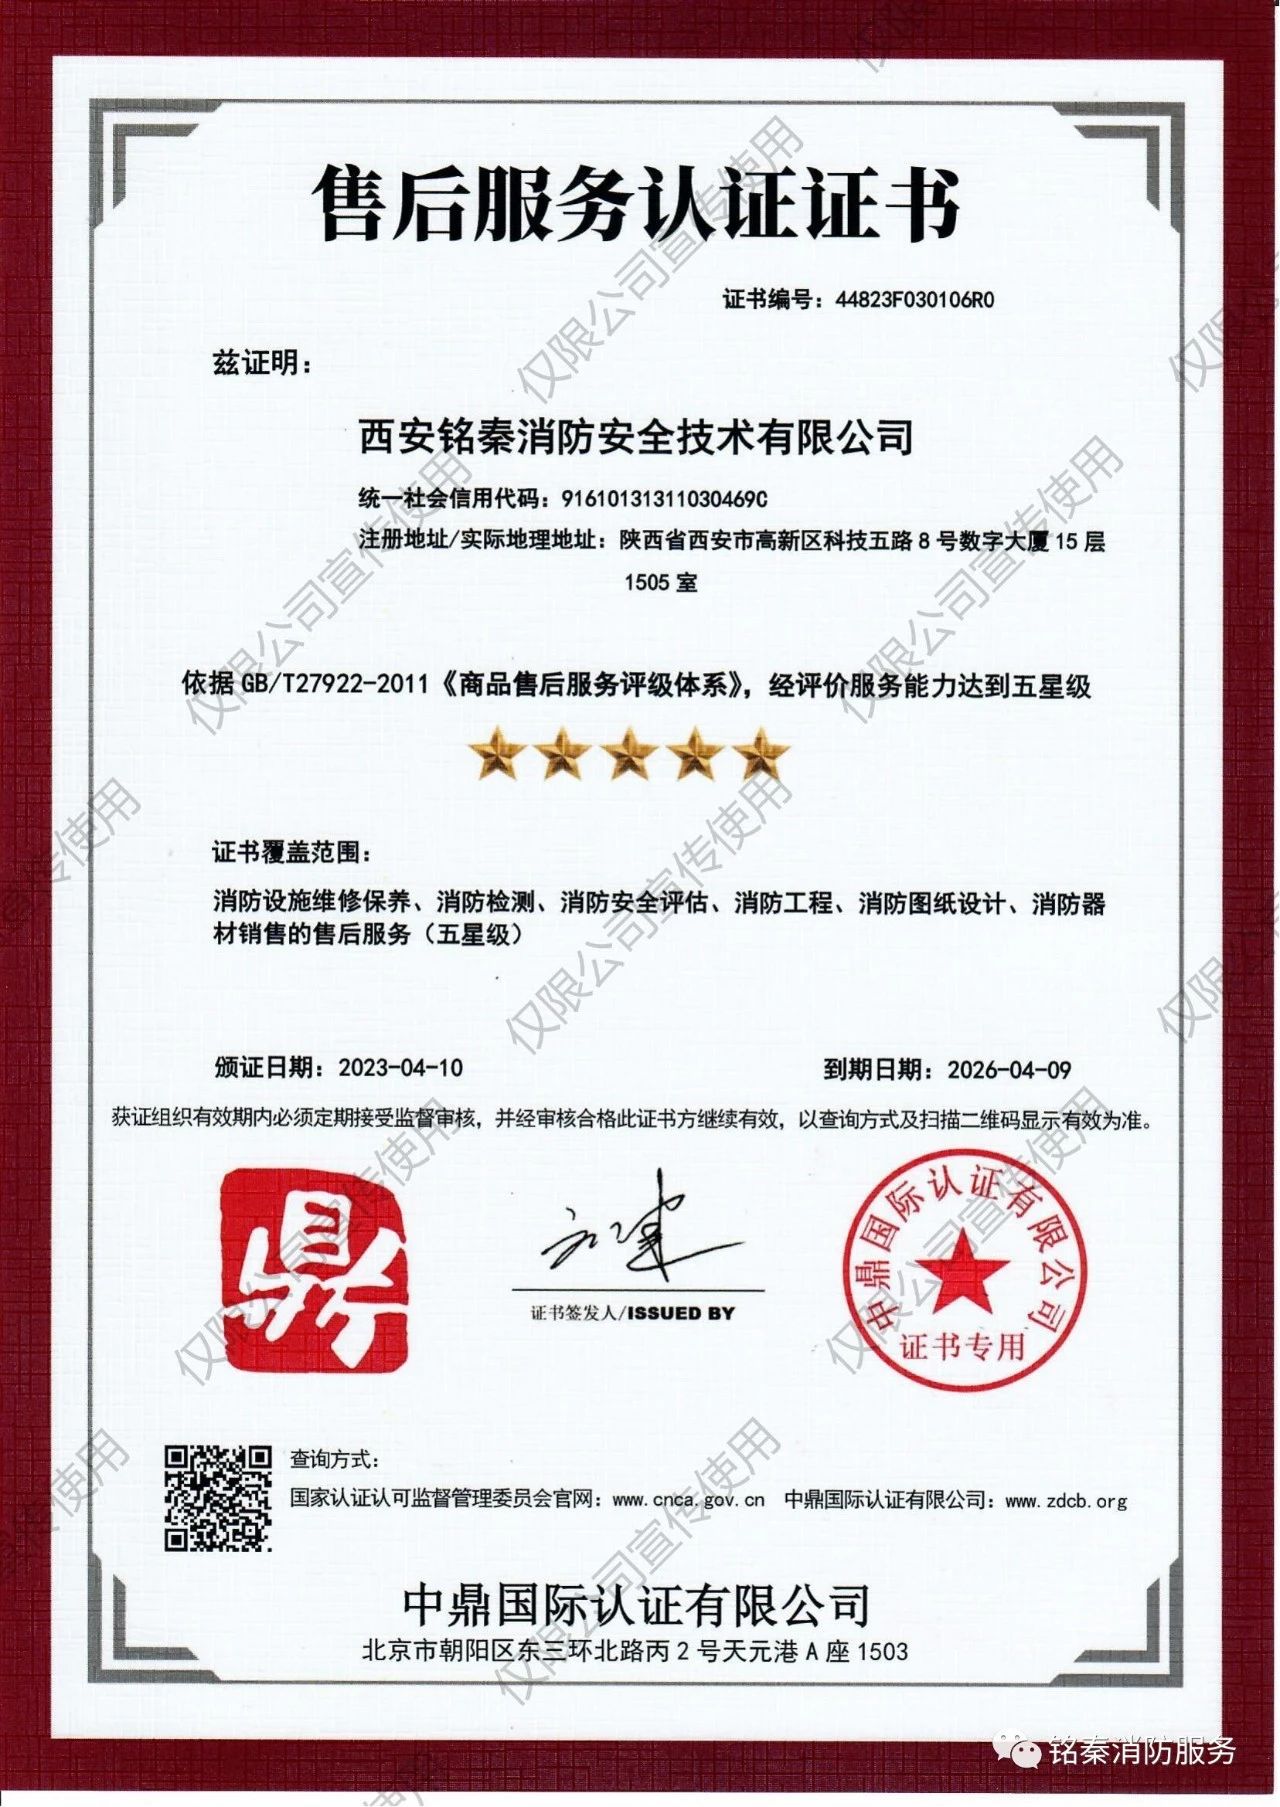 【资质】喜报--祝贺西安铭秦消防安全技术有限公司顺利获得五星级售后服务认证证书